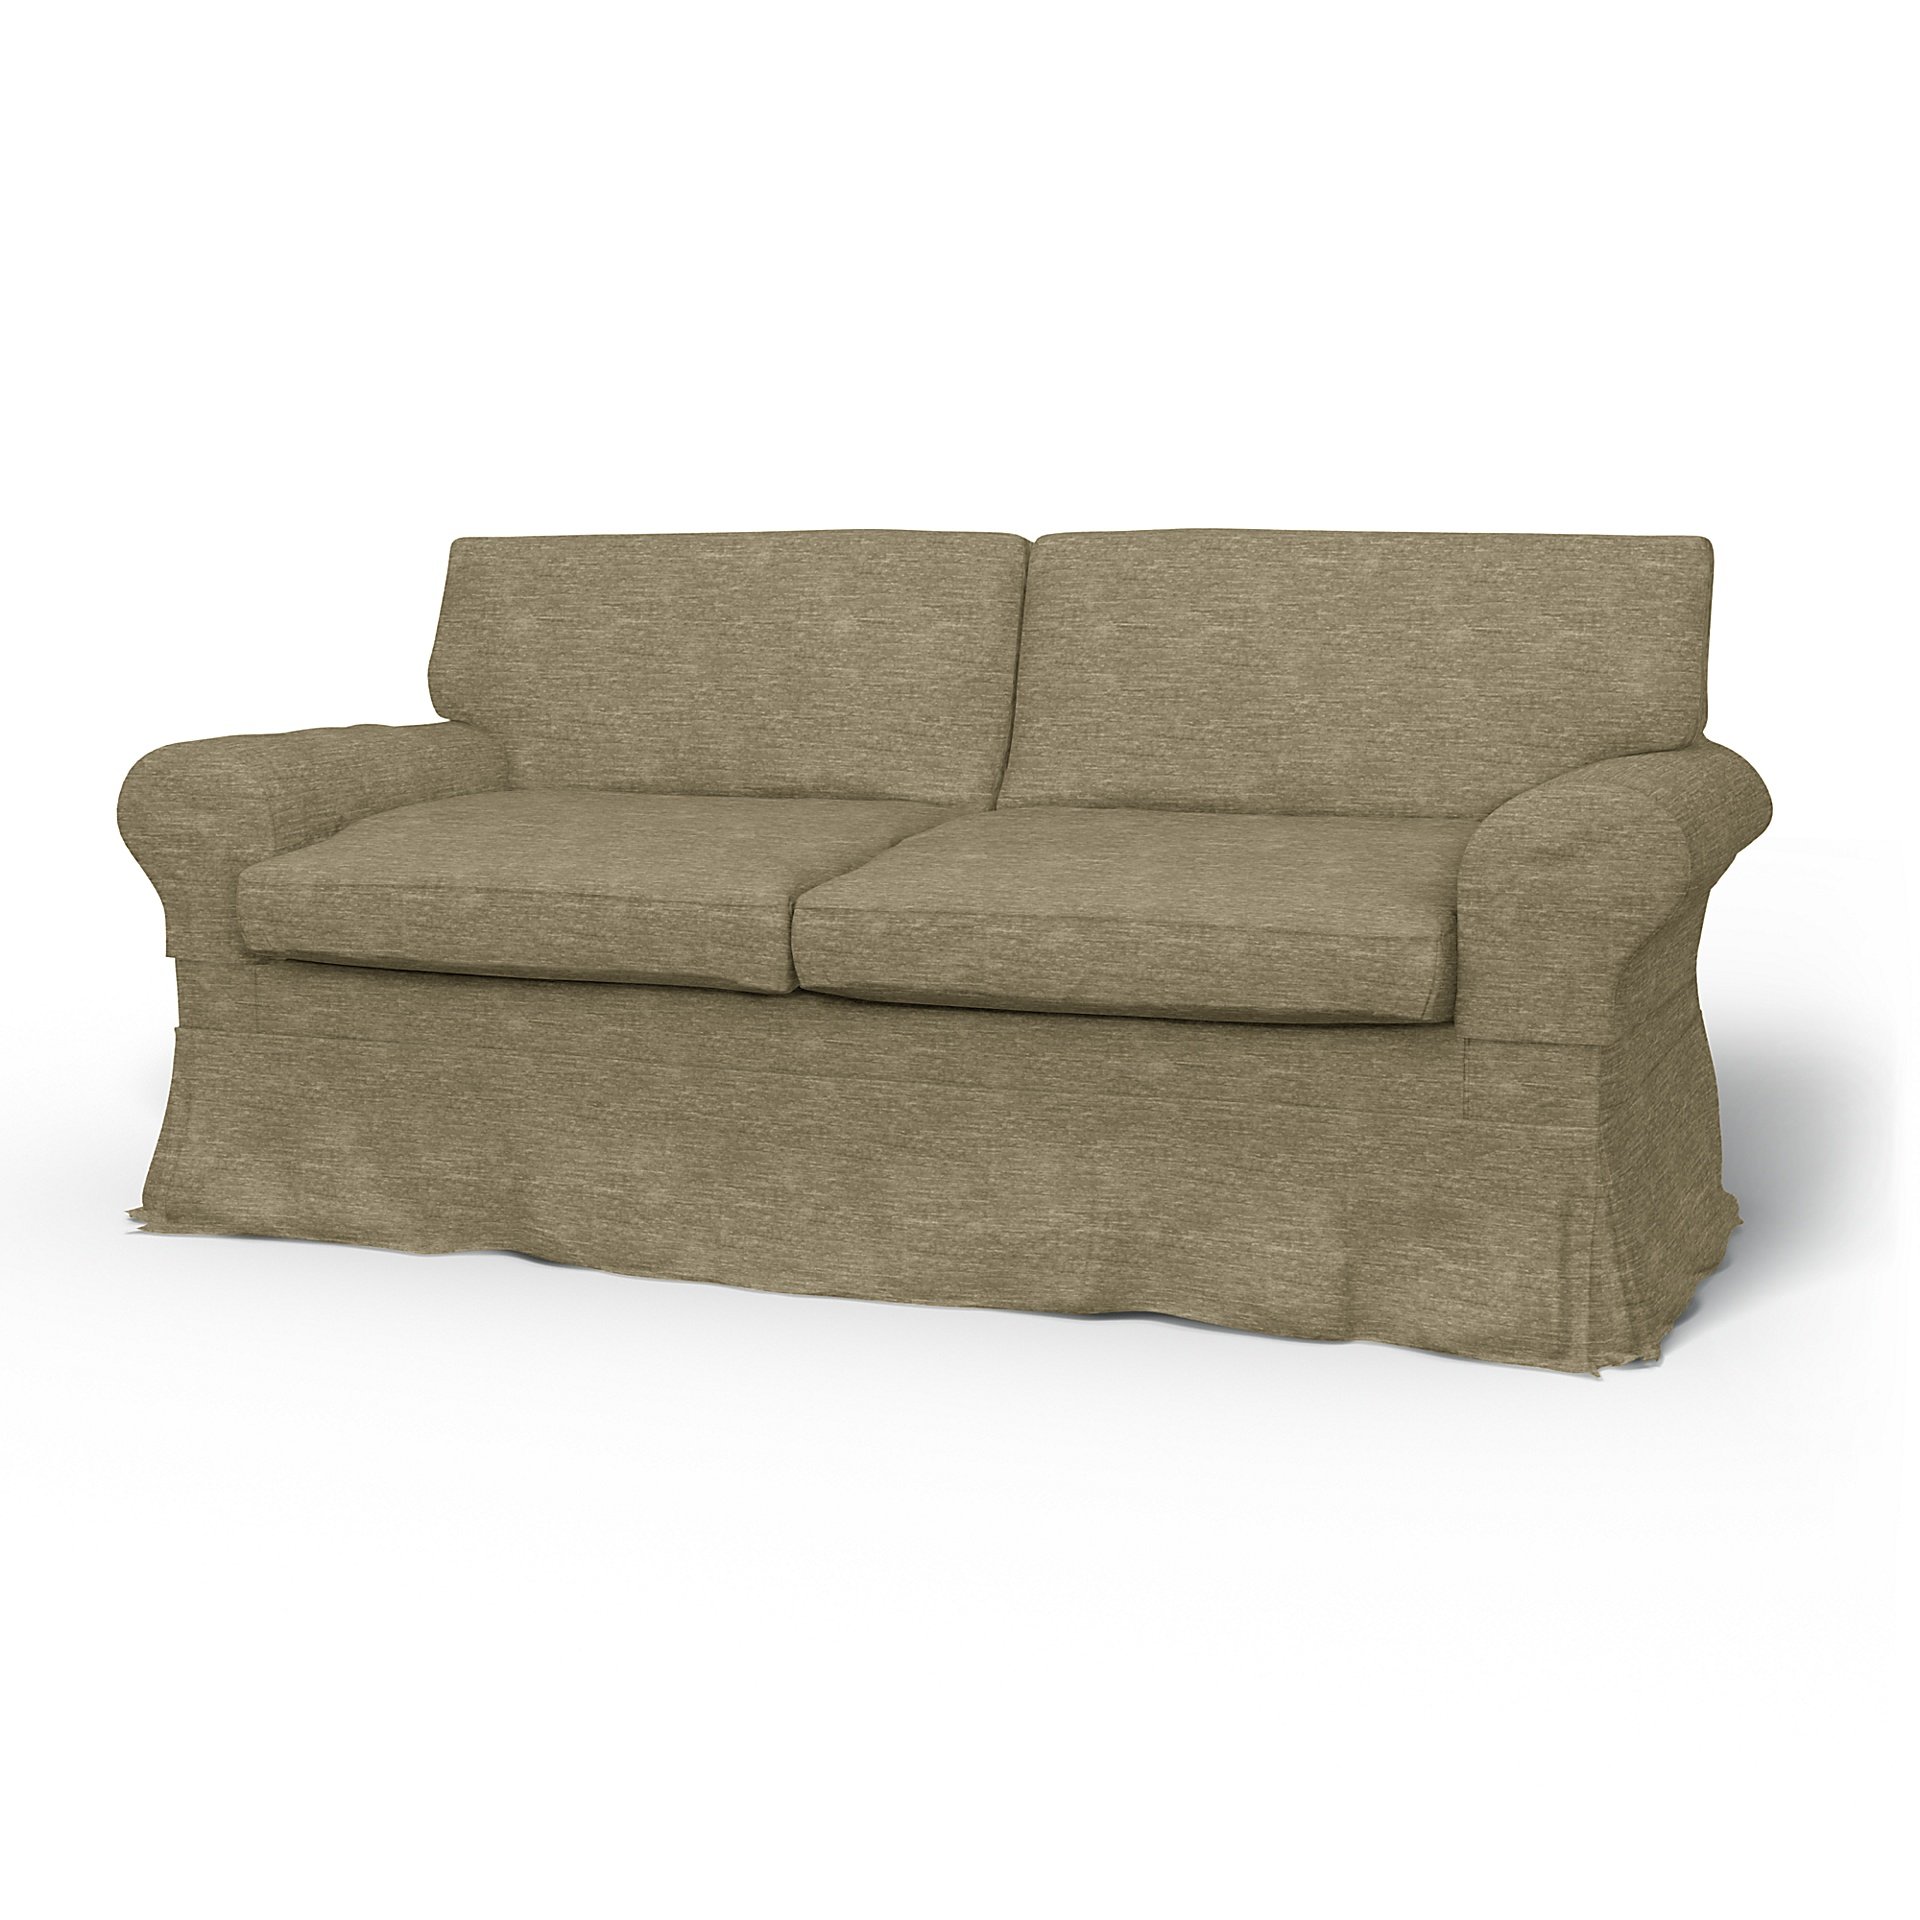 IKEA - Ektorp 2 Seater Sofa Bed Cover, Beige, Velvet - Bemz